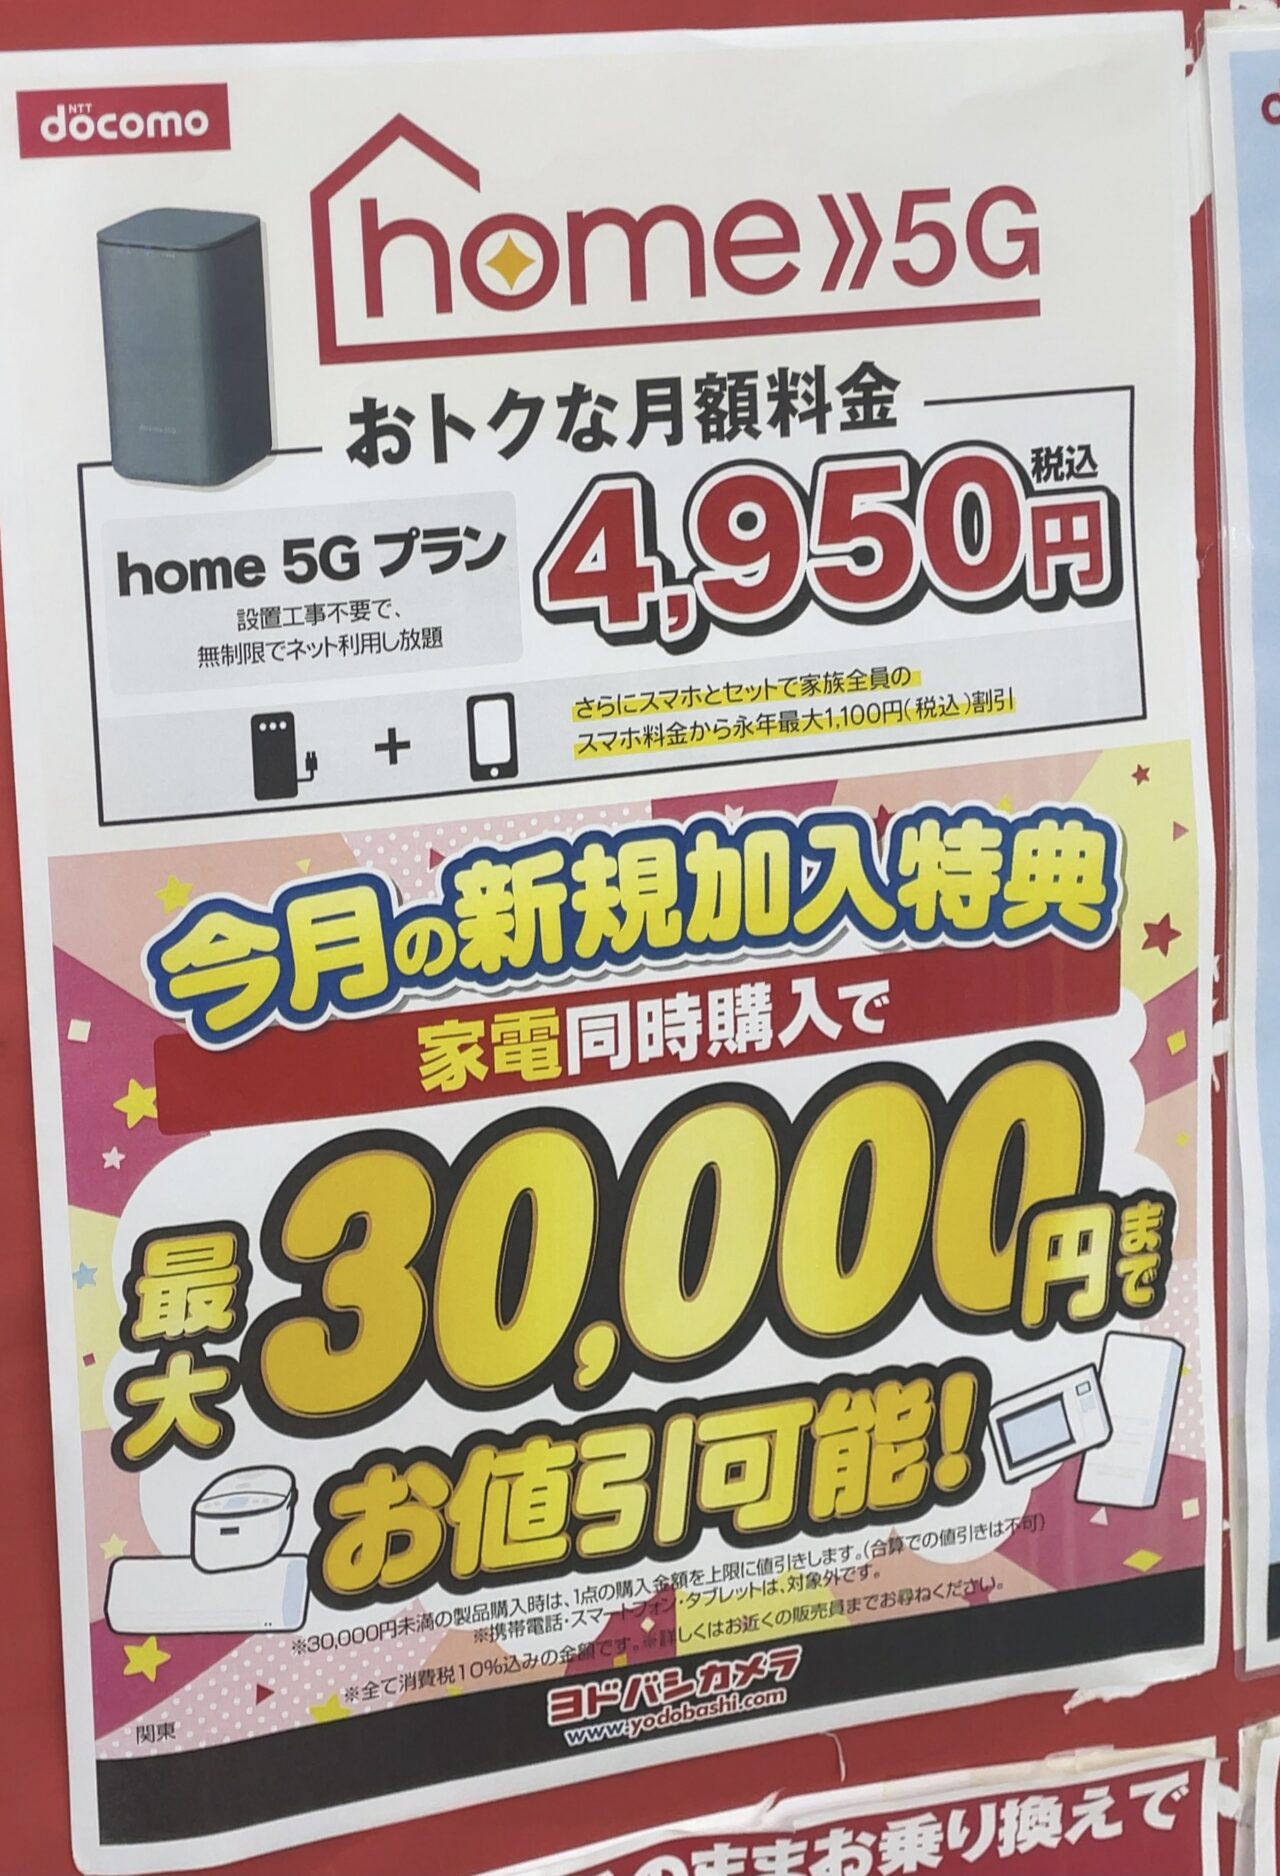 ヨドバシカメラでもドコモのhome 5g 実質0円 と家電同時購入で最大3万円引きを案内